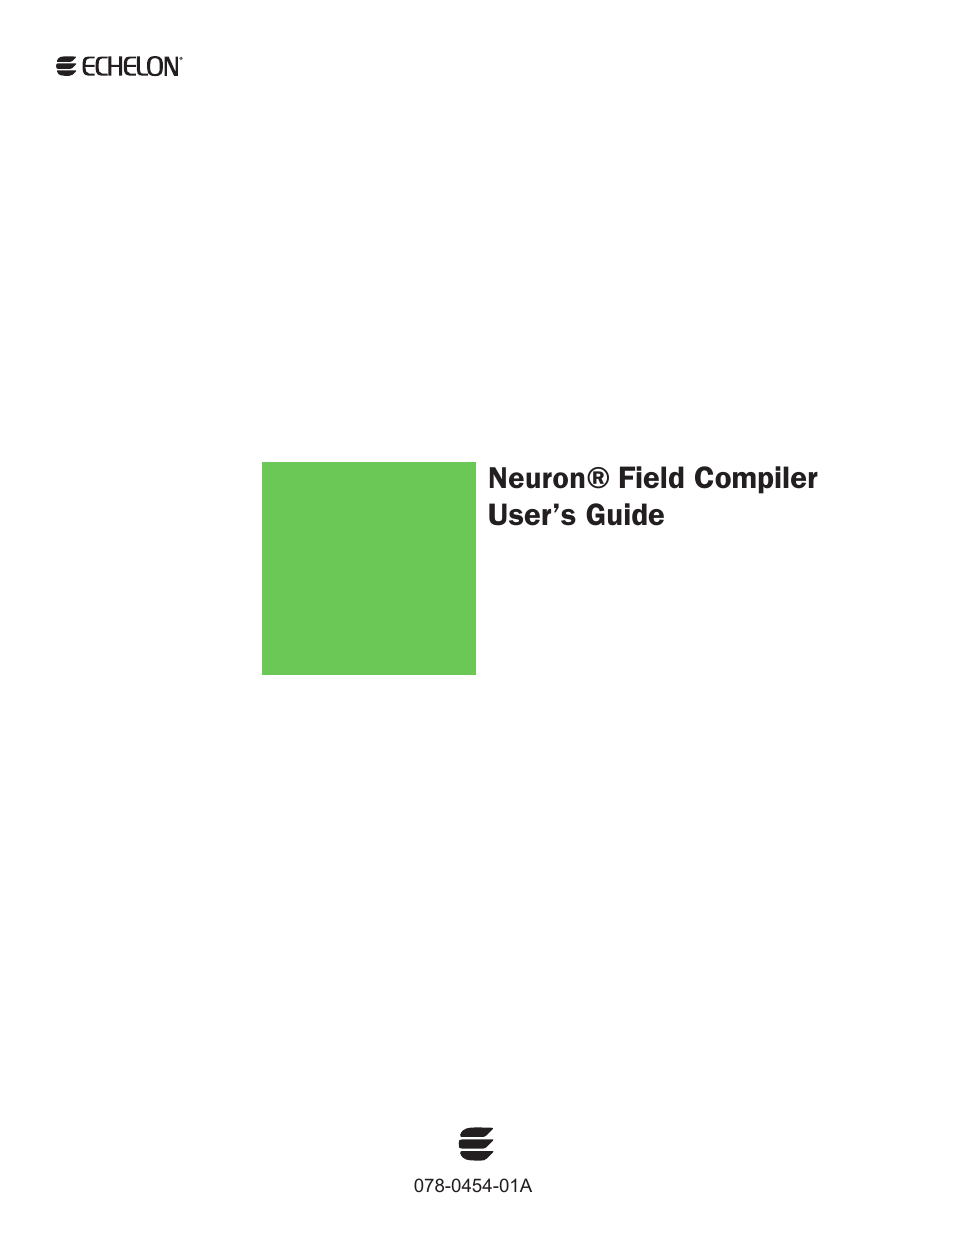 Neuron Field Compiler